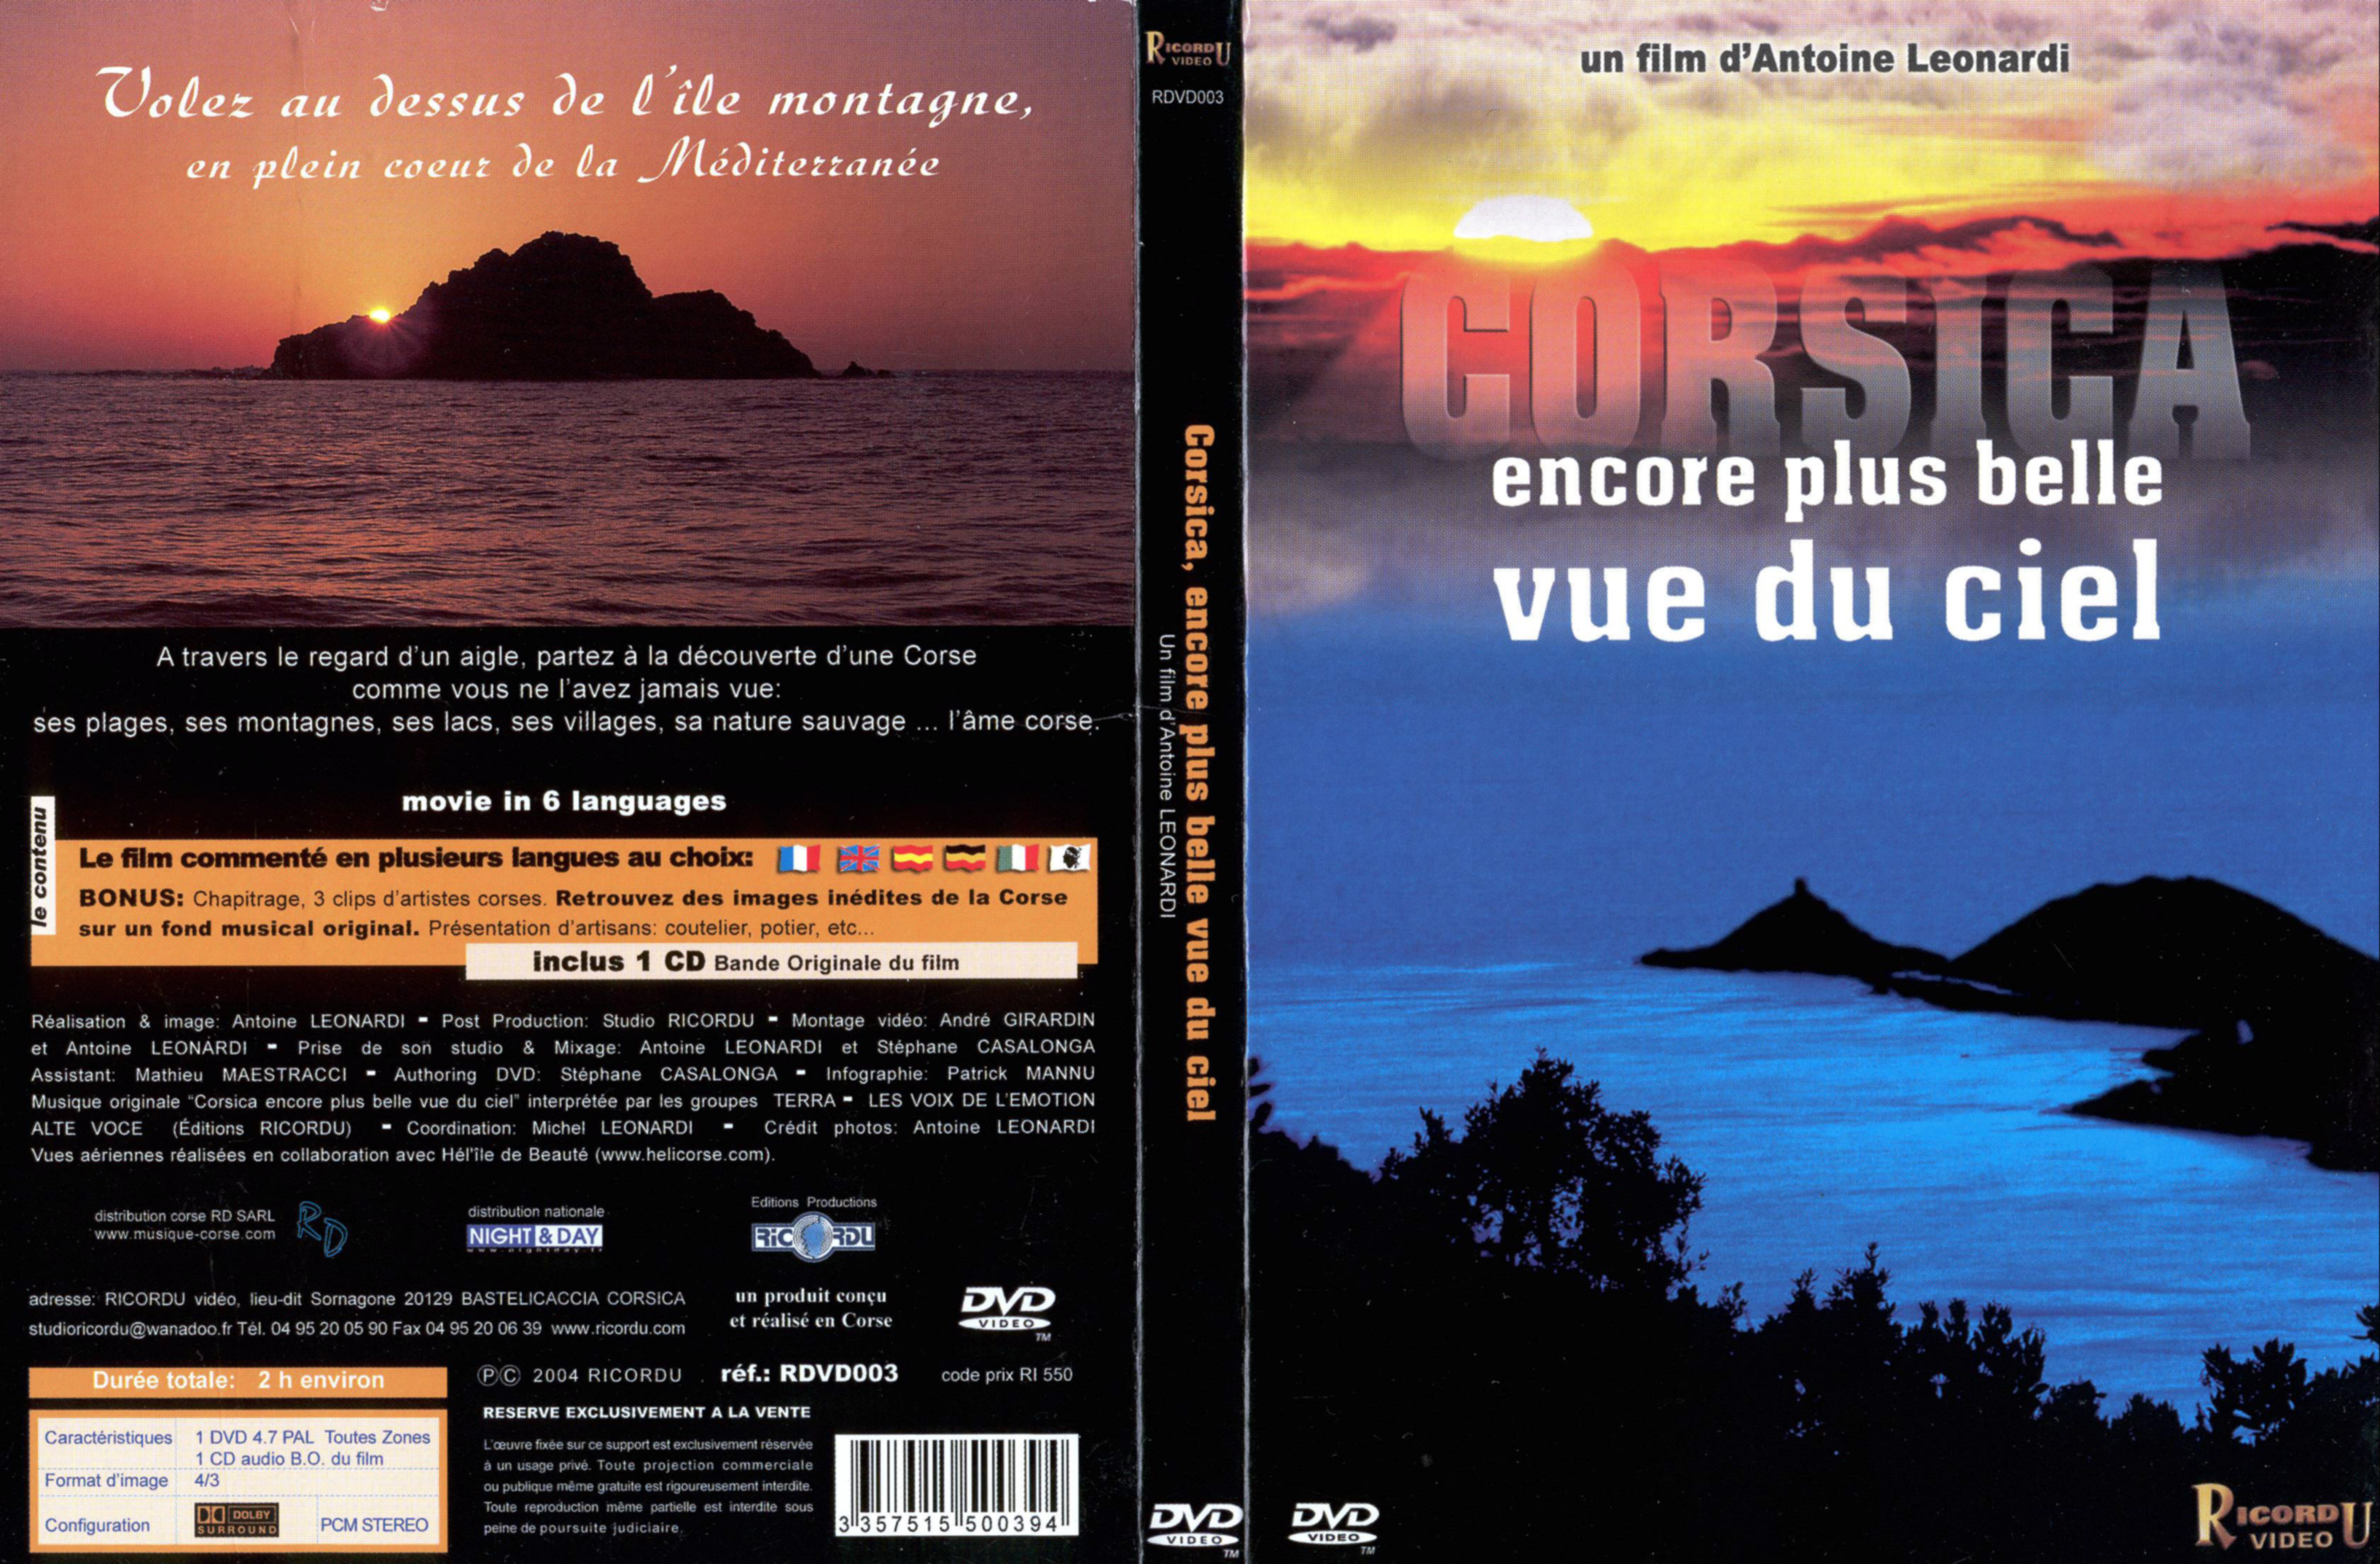 Jaquette DVD Corsica encore plus belle vue du ciel